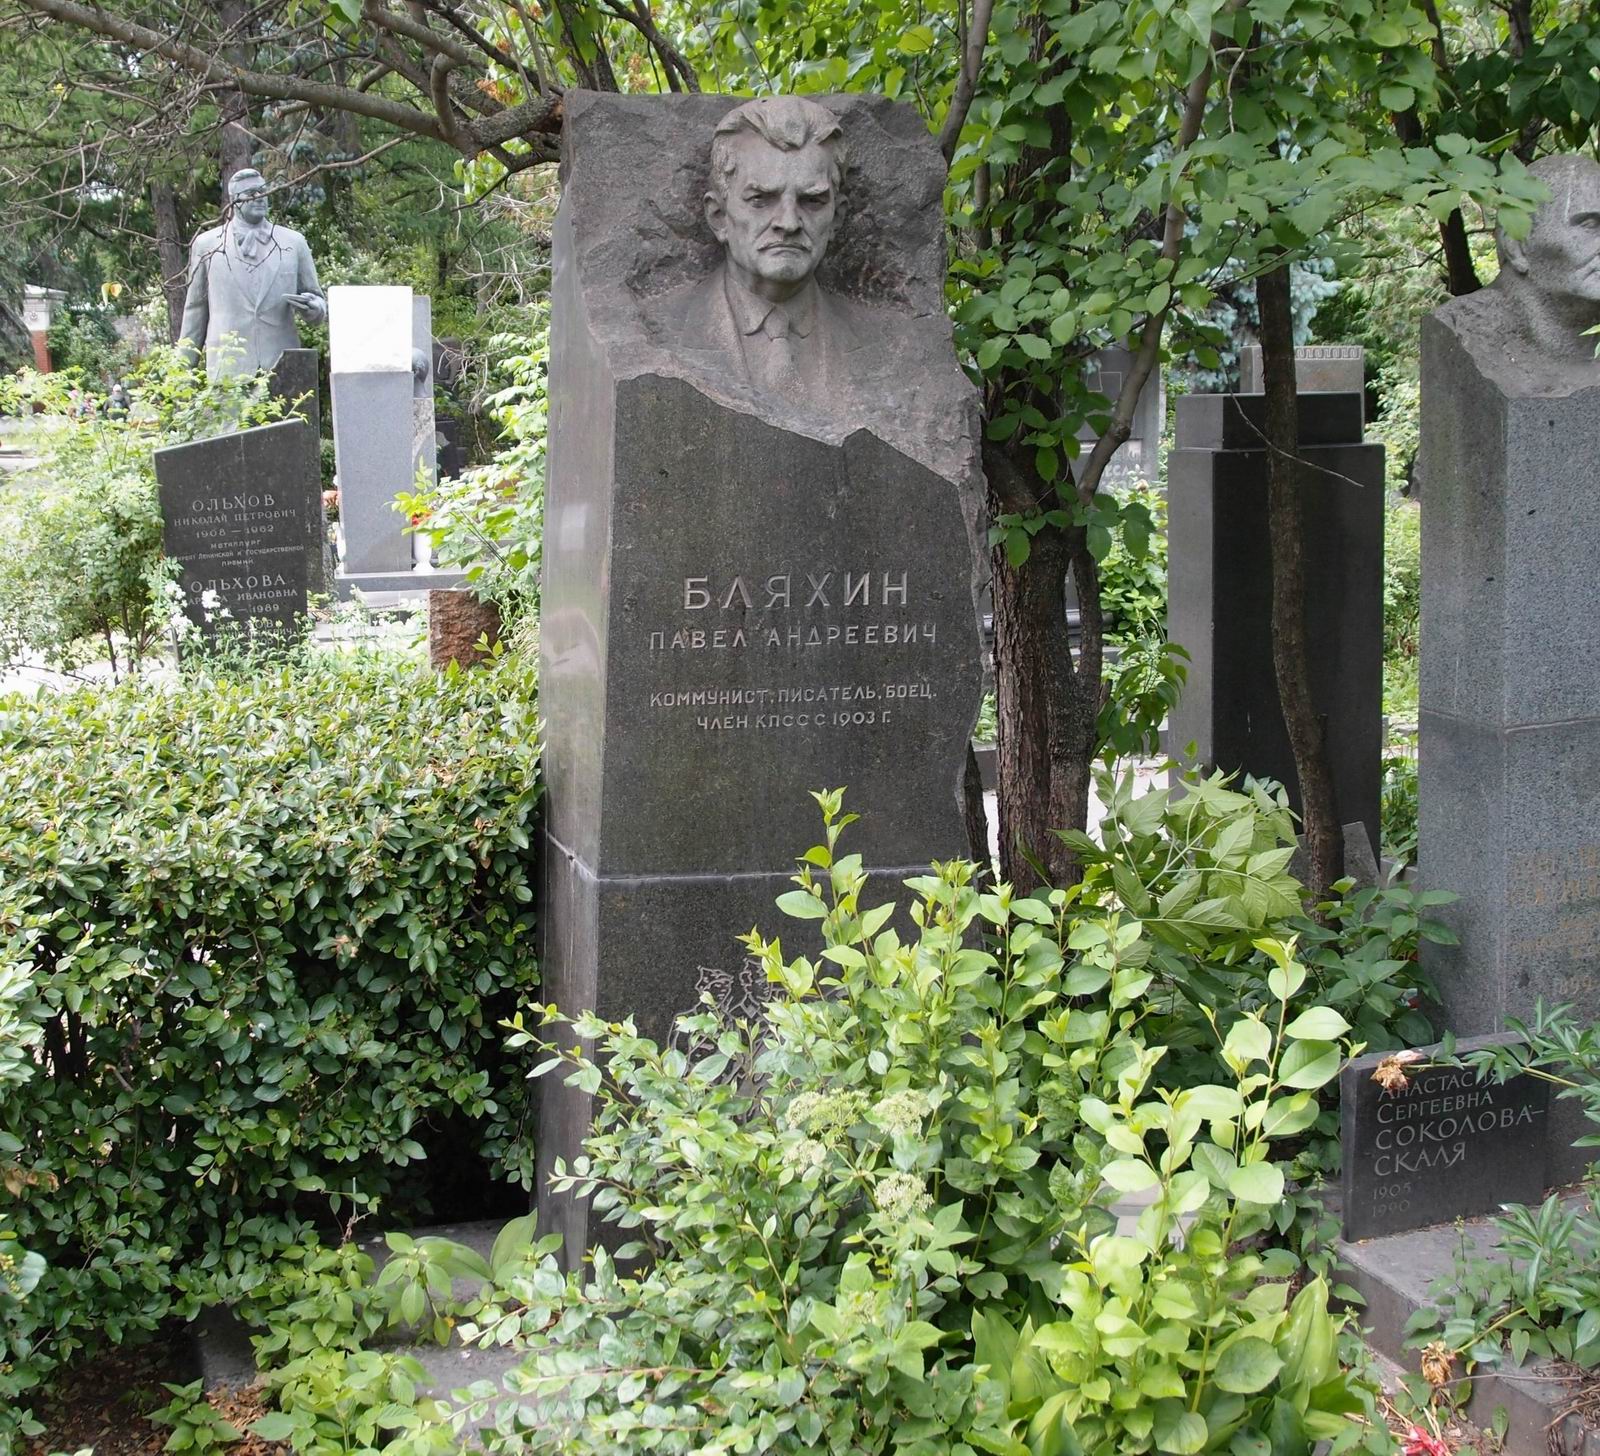 Памятник на могиле Бляхина П.А. (1886-1961), ск. А.Елецкий, арх. В.Петербуржцев, на Новодевичьем кладбище (8-12-16).